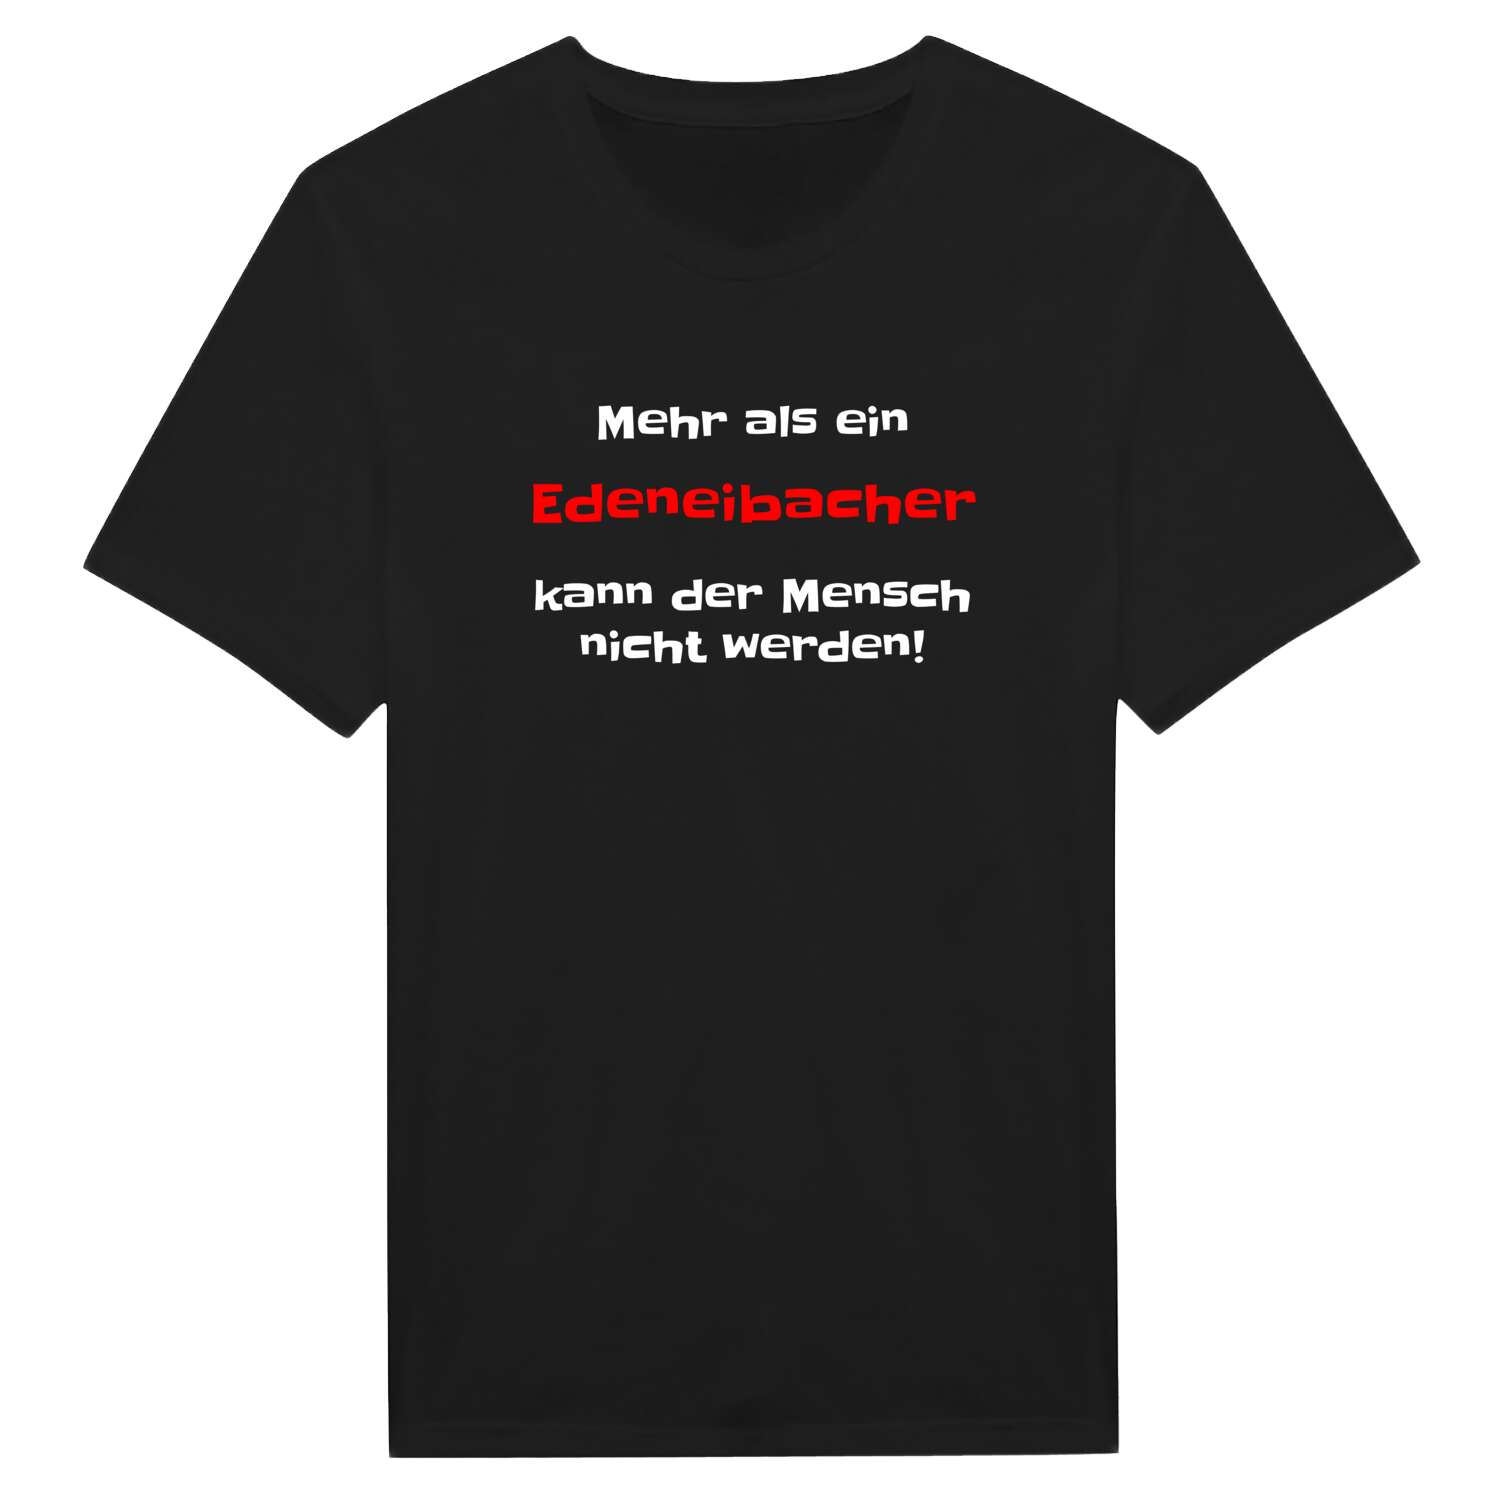 Edeneibach T-Shirt »Mehr als ein«